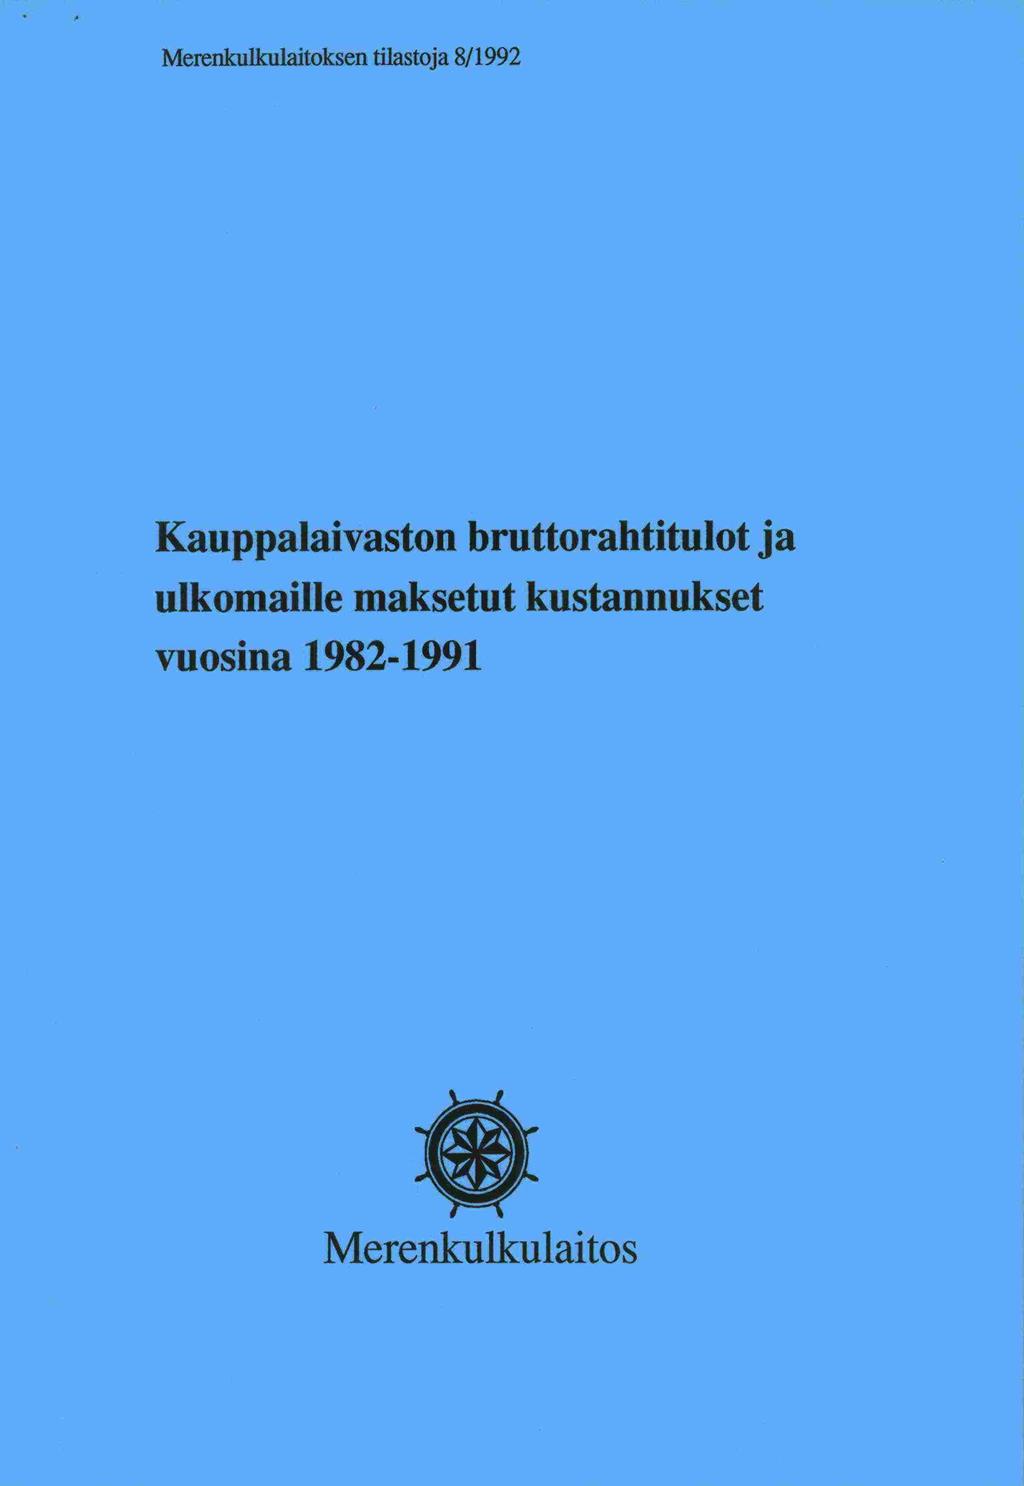 Merenkulkulaitoksen tilastoja 8/1992 Kauppalaivaston bruttorahtitulot